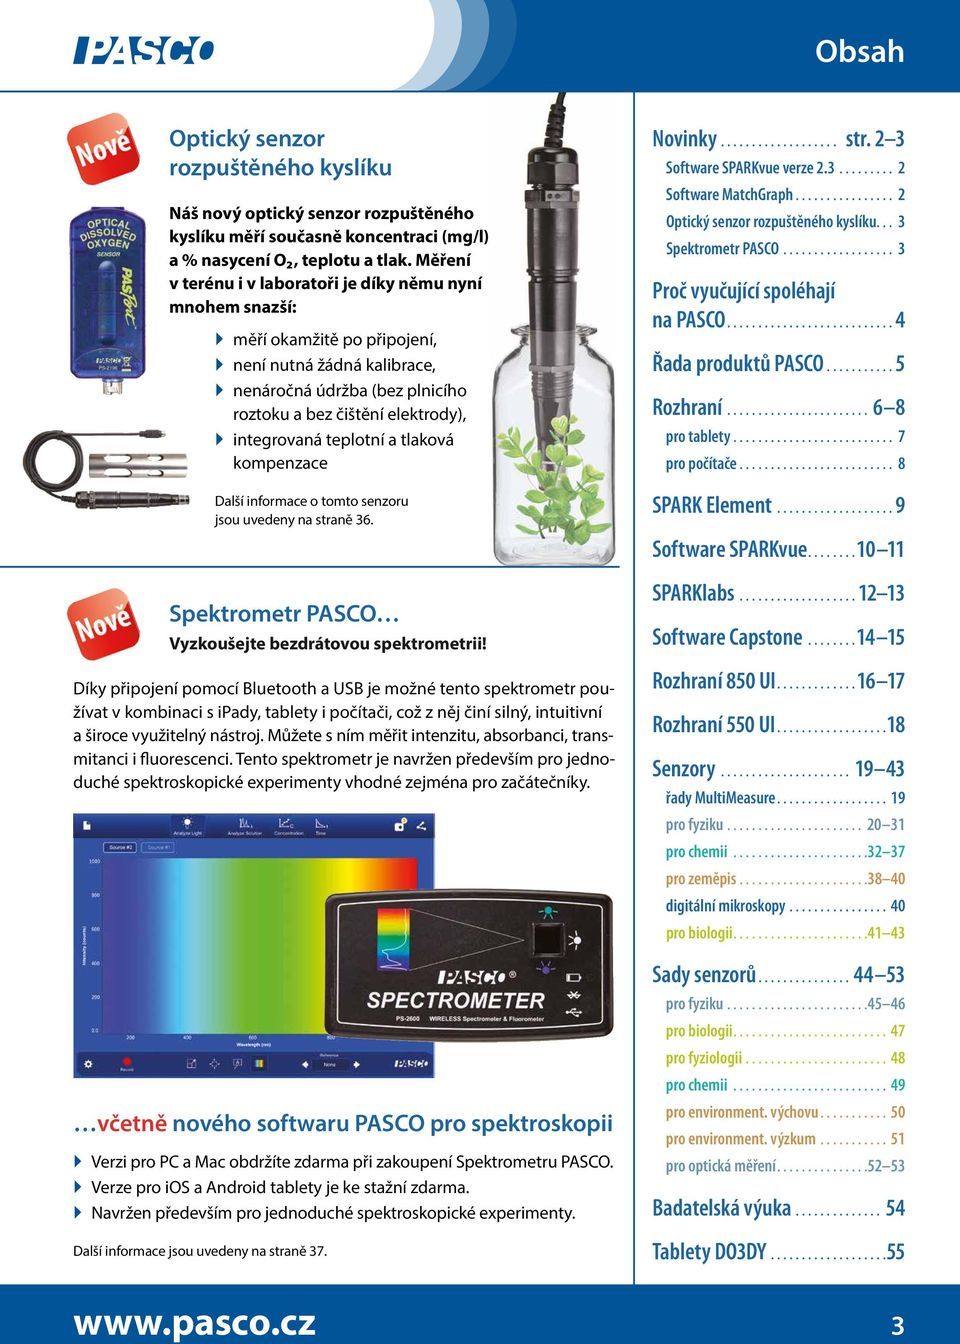 teplotní a tlaková kompenzace Další informace o tomto senzoru jsou uvedeny na straně 36. Spektrometr PASCO Vyzkoušejte bezdrátovou spektrometrii!